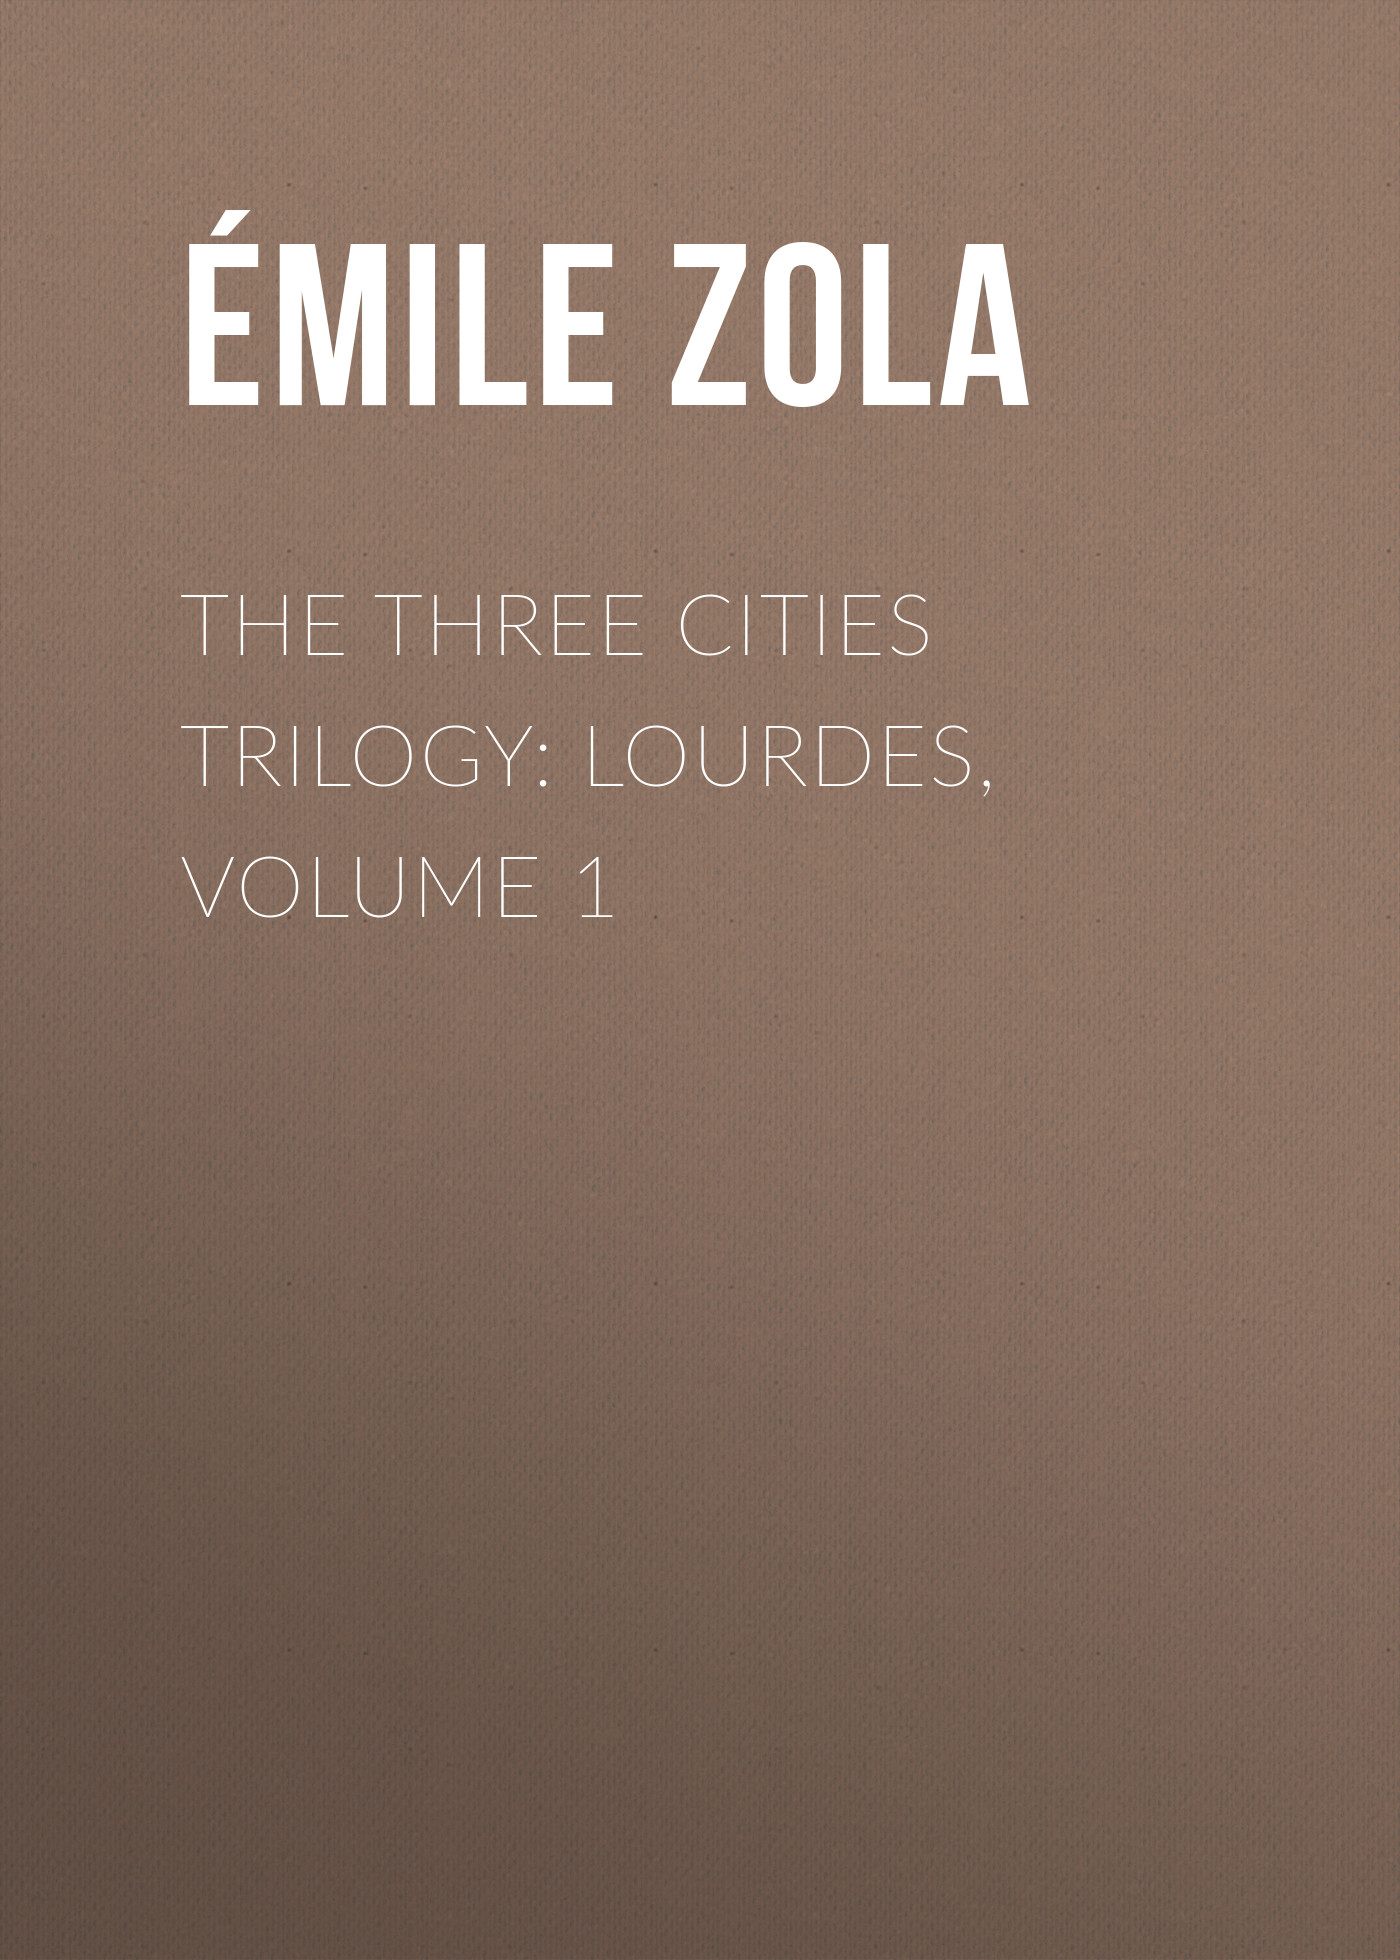 Книга The Three Cities Trilogy: Lourdes, Volume 1 из серии , созданная Émile Zola, может относится к жанру Литература 19 века, Зарубежная старинная литература, Зарубежная классика. Стоимость электронной книги The Three Cities Trilogy: Lourdes, Volume 1 с идентификатором 25559532 составляет 0 руб.